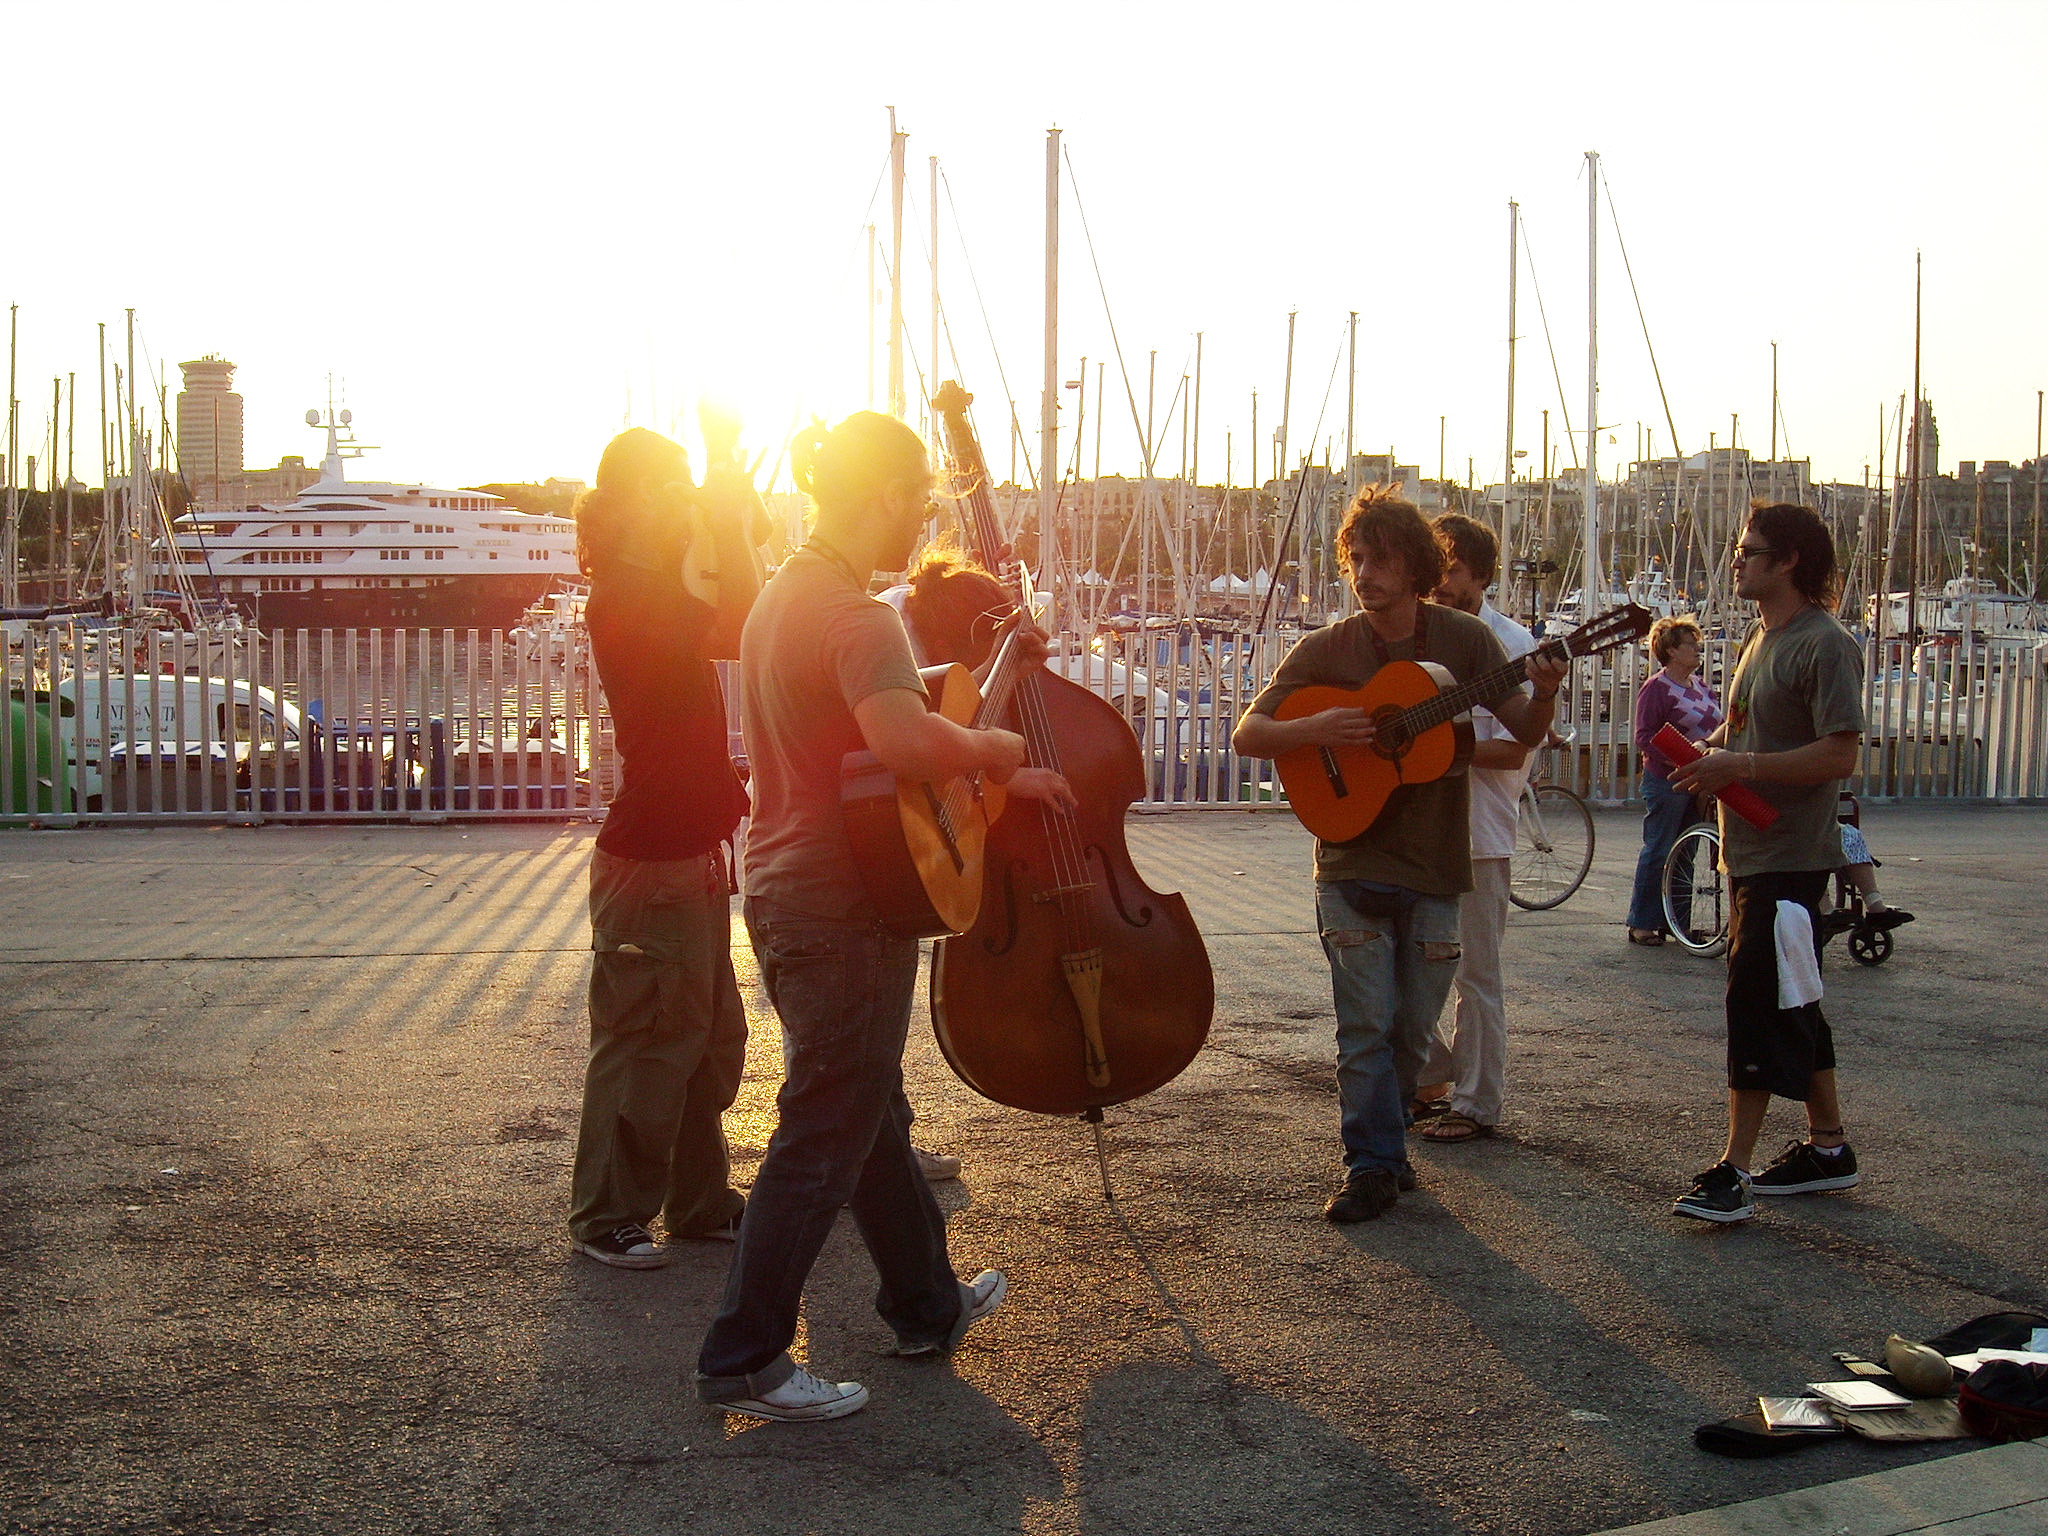 Músicos tocam diversos instrumentos no contra luz do pôr do sol de um porto com barcos ancorados ao fundo